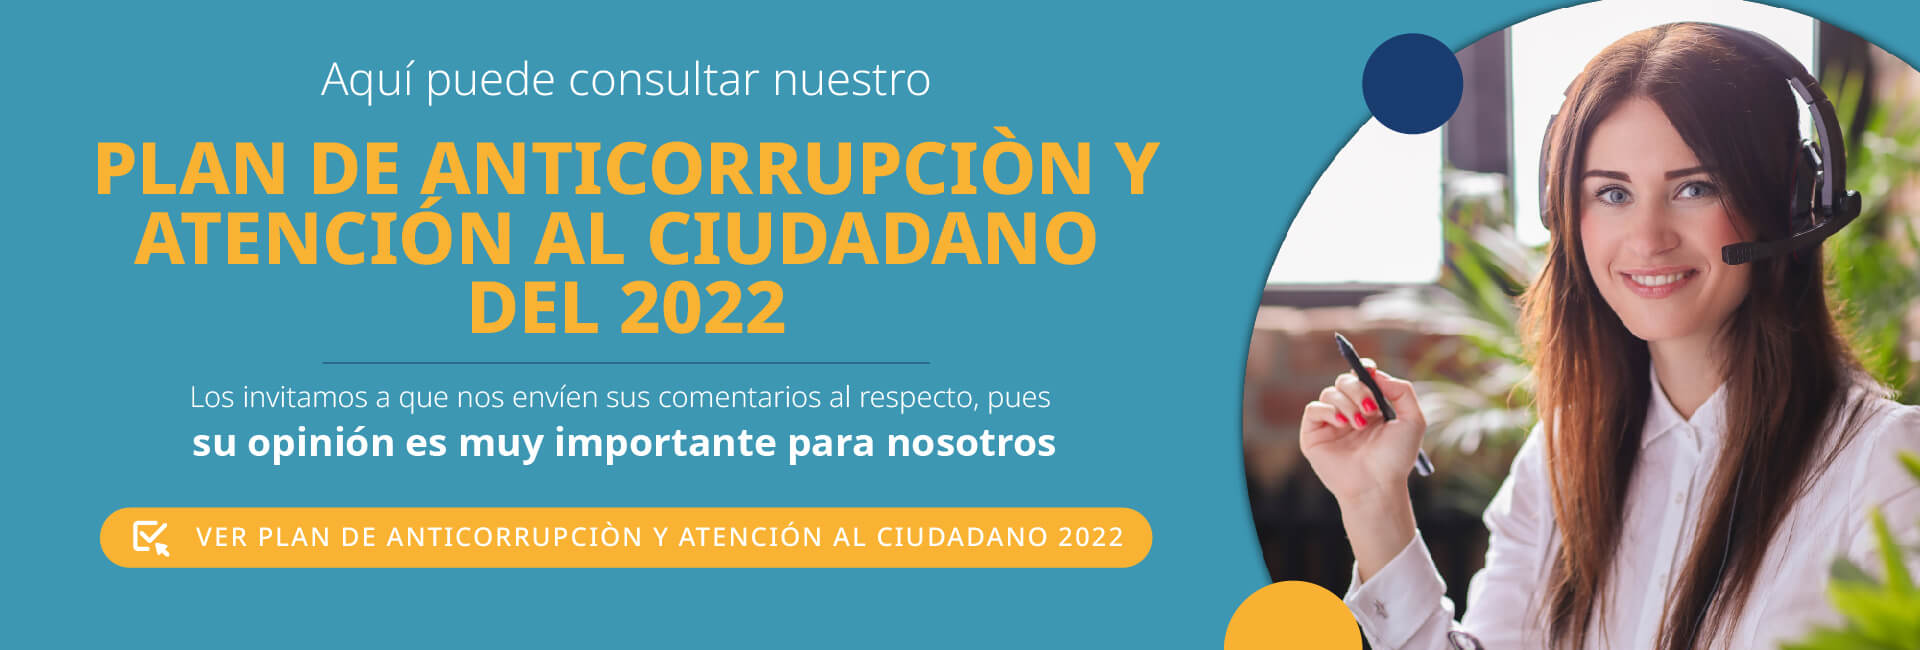 Plan anticorrupción 2022